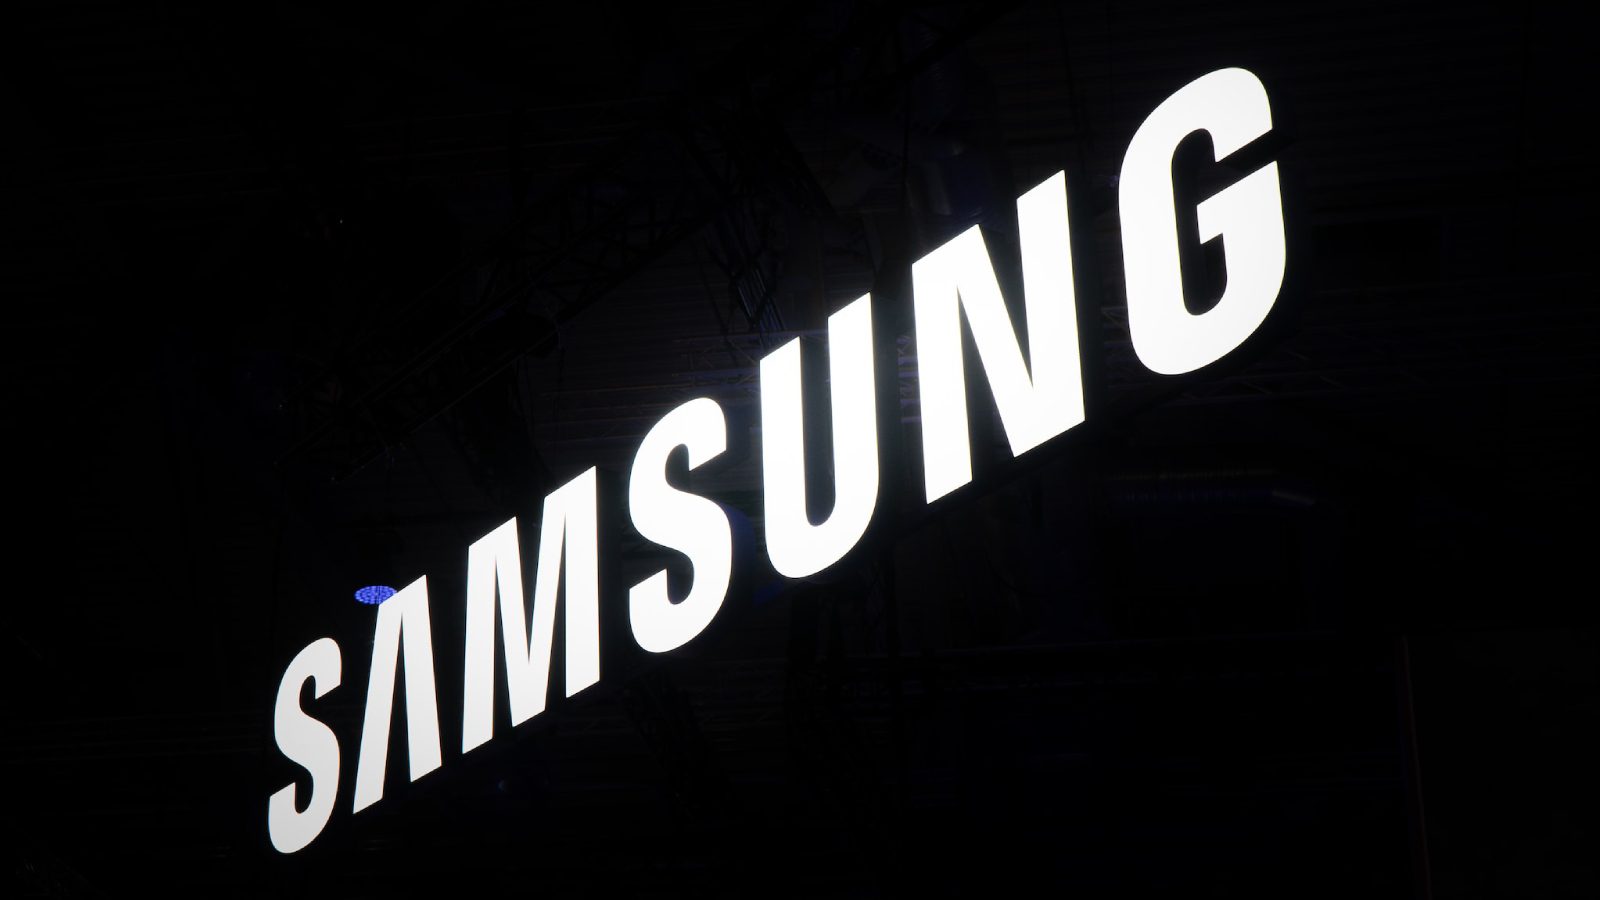 Конкурент Samsung, компания Micron, инициировала строительство завода по производству полупроводников в Индии